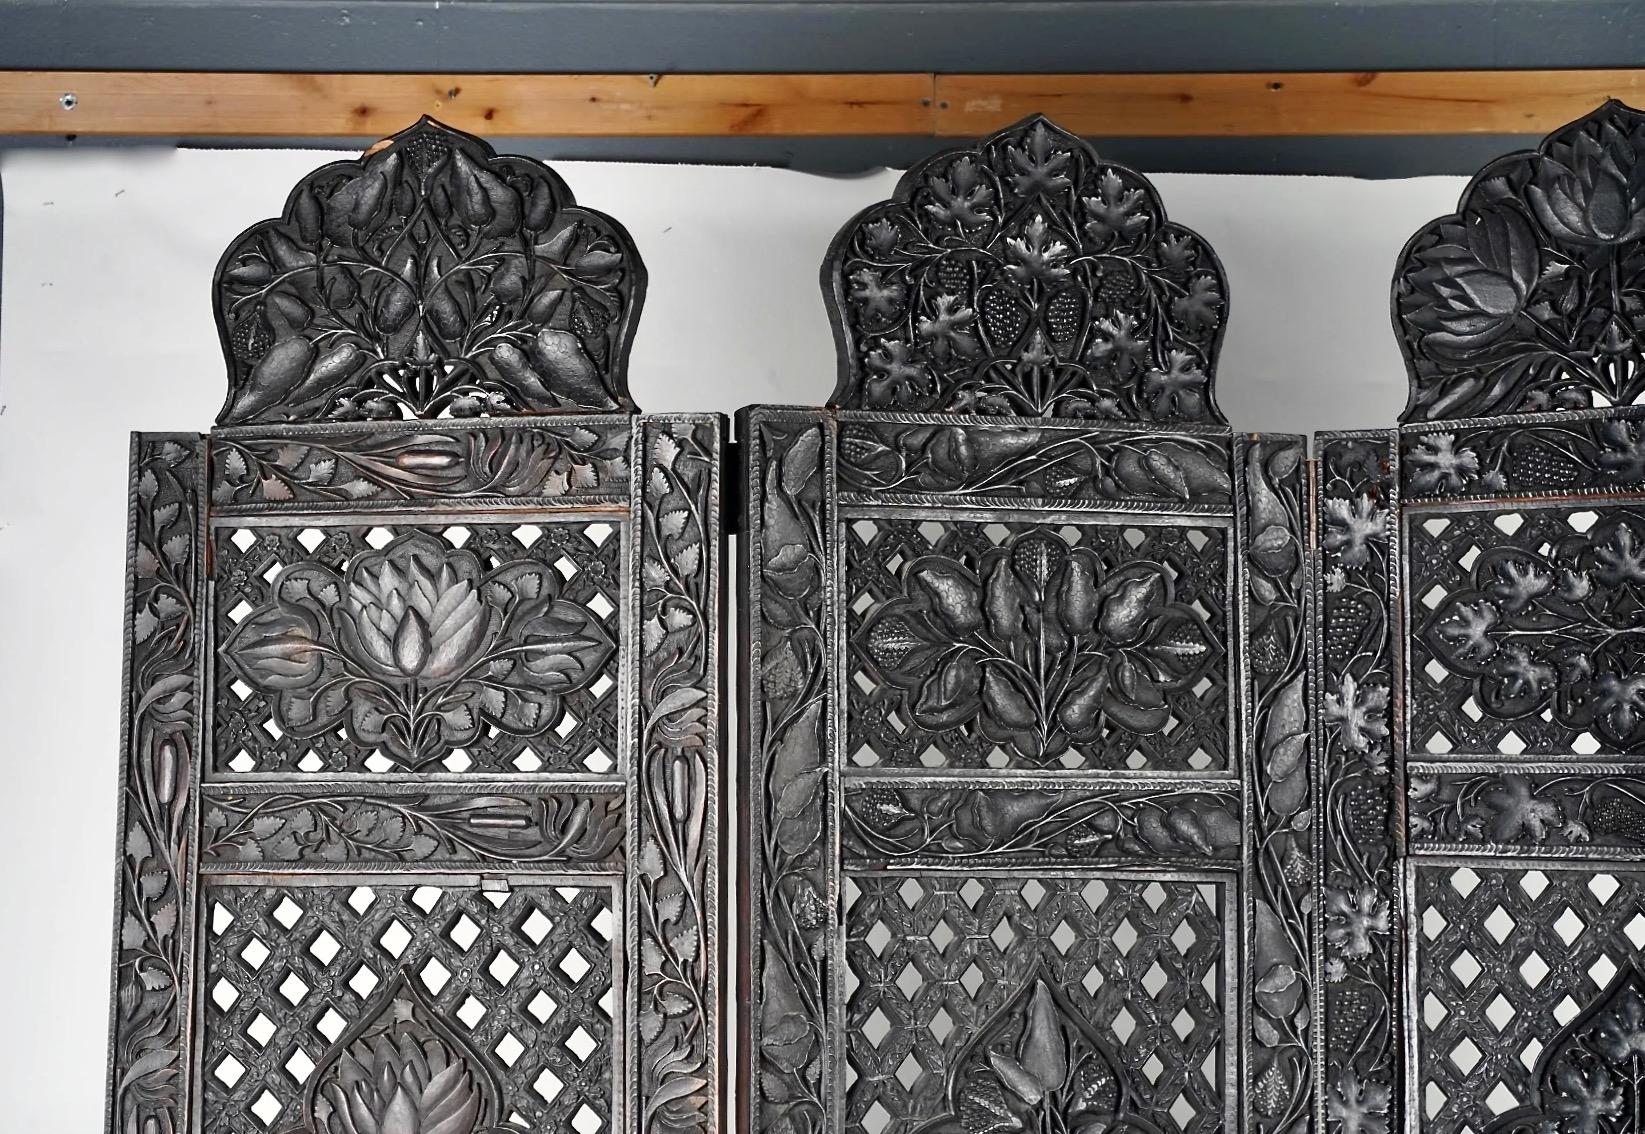 Il s'agit d'un paravent en bois dur indien Anglo-Raj finement sculpté, datant de la fin du XIXe siècle, qui a été fabriqué pour le marché de l'exportation. L'écran à quatre panneaux présente quatre panneaux floraux sculptés distinctement à l'avant